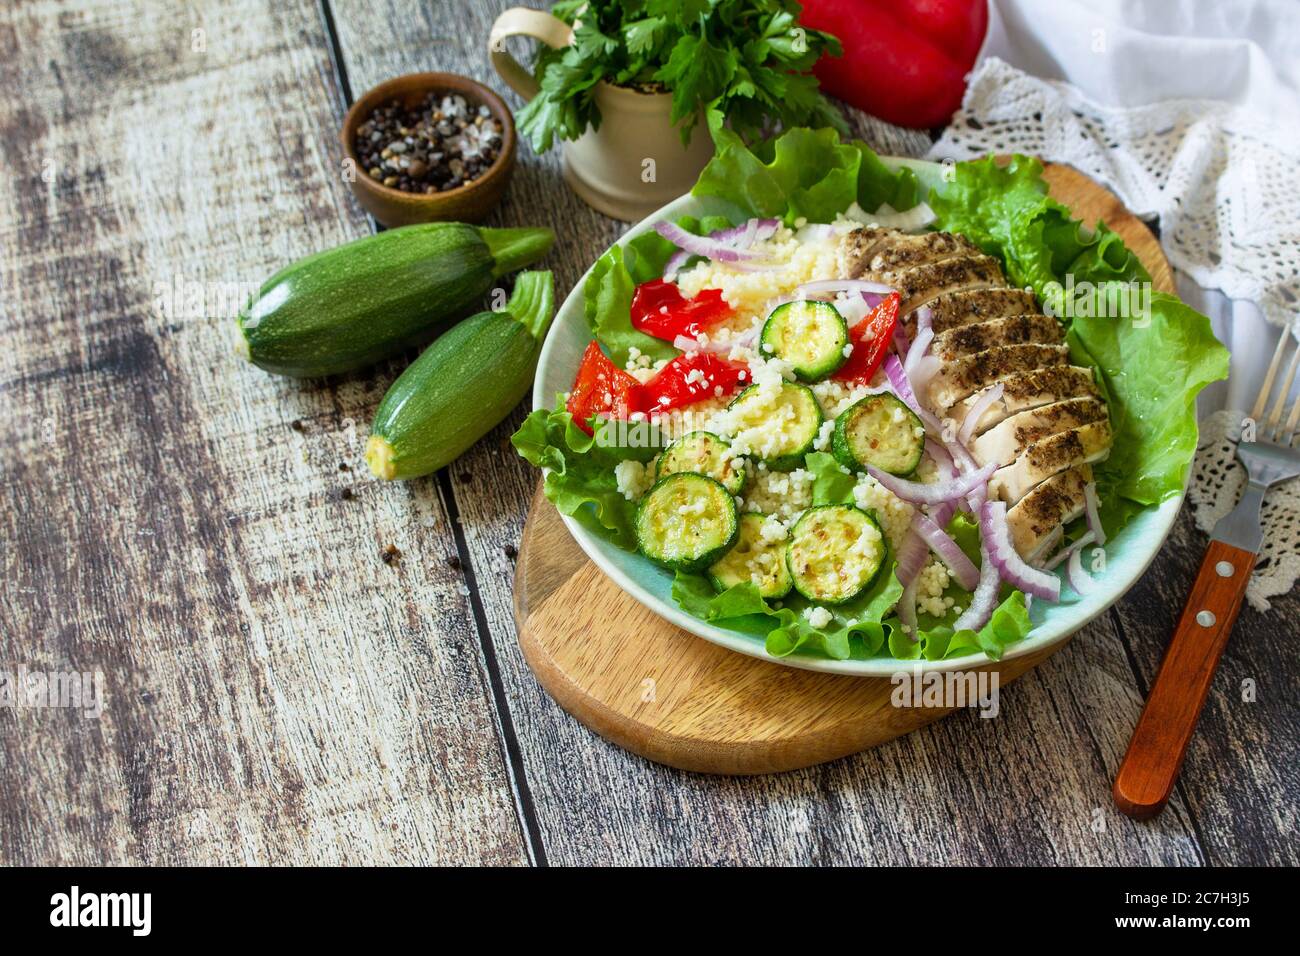 Cuisine orientale. Déjeuner d'été, salade saine avec couscous, légumes grillés et laitue. Copier l'espace. Banque D'Images